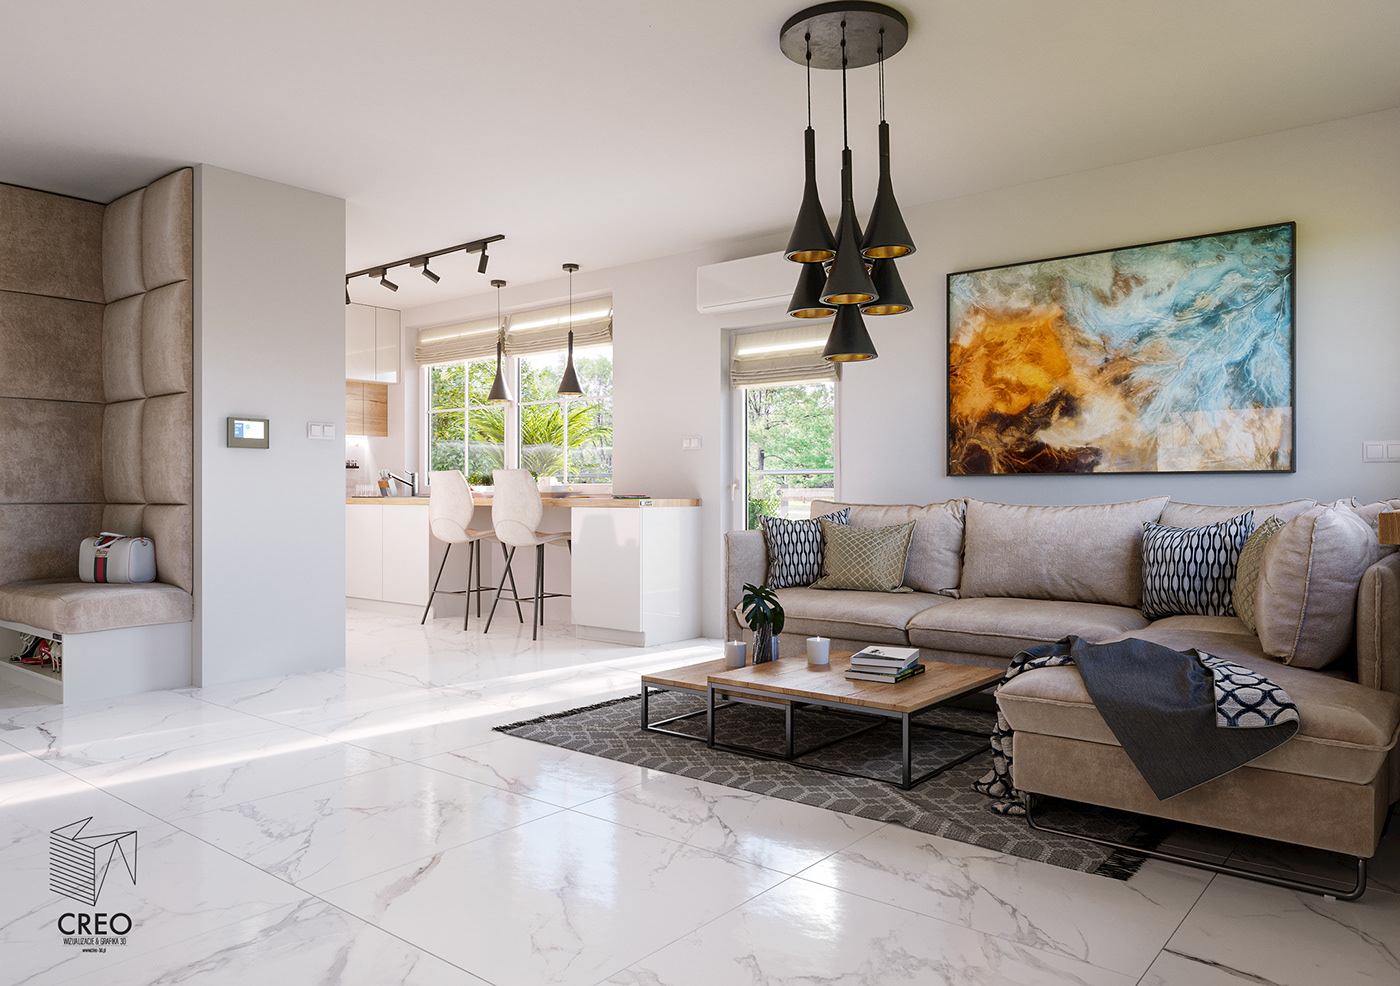 architecture CGI design homeinterior Interior interiordesign kitchen livingroom Picture sofa